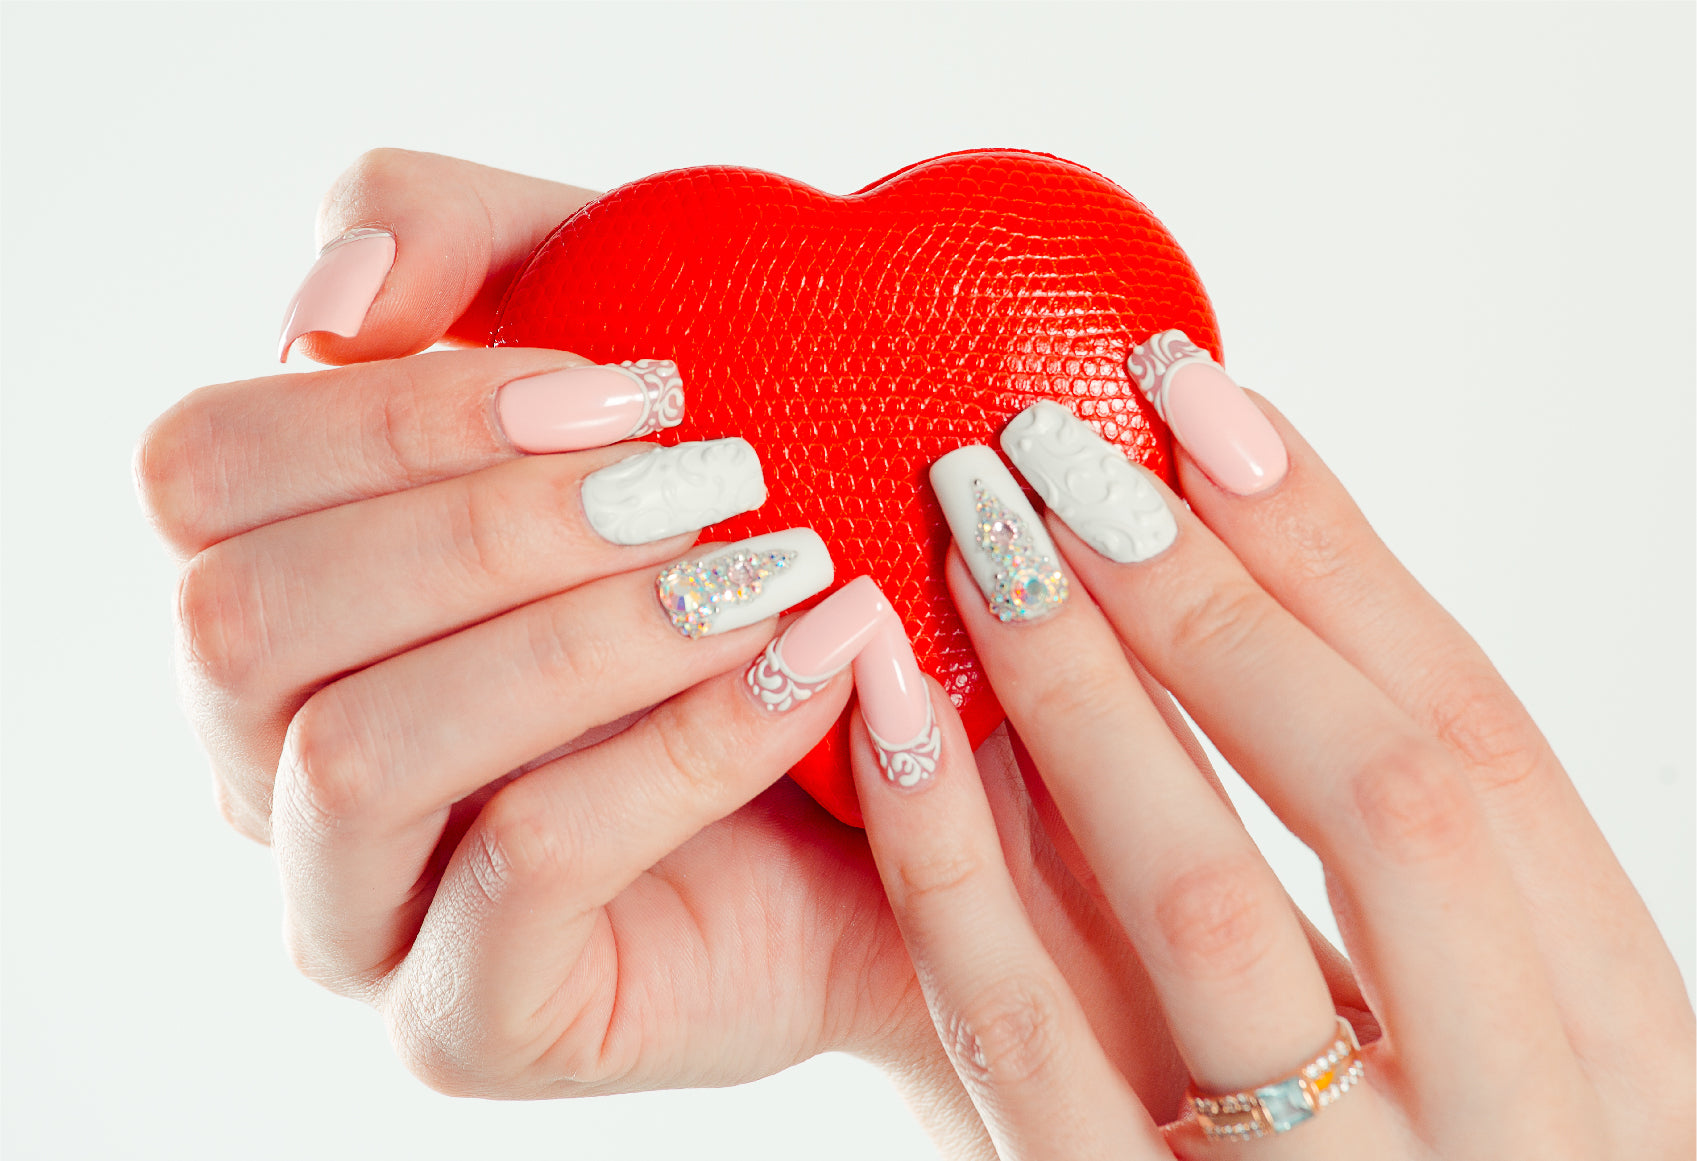 Benefits of NuGenesis Nails dip powder nails.